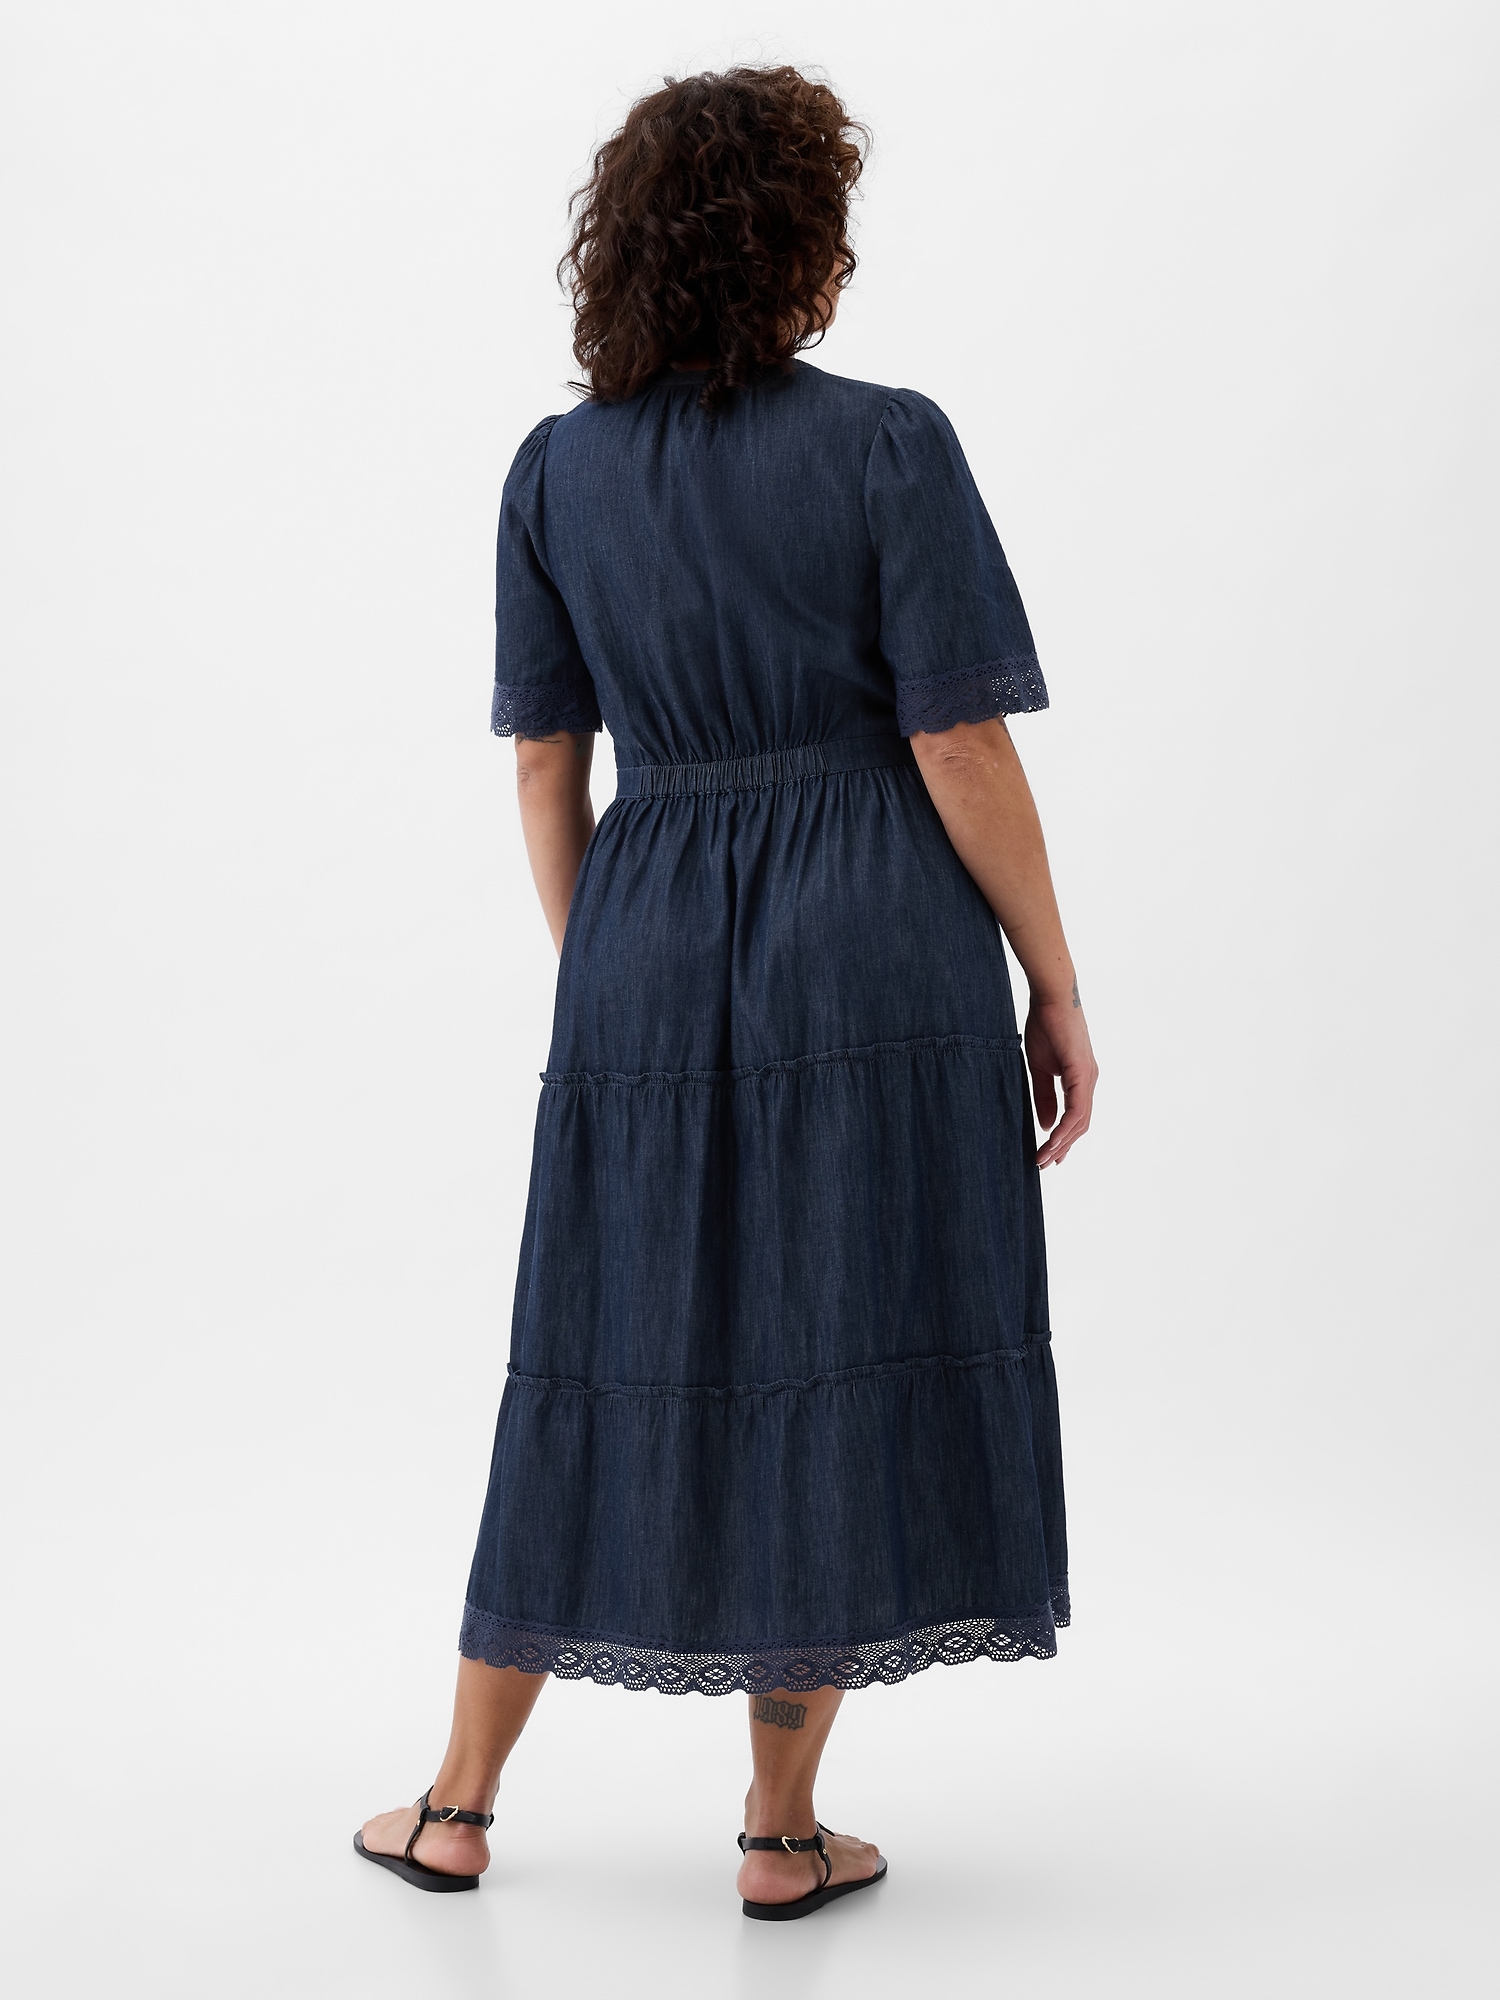 Women's Denim Midi-Length Over-The-Knee Casual Salopette Dress